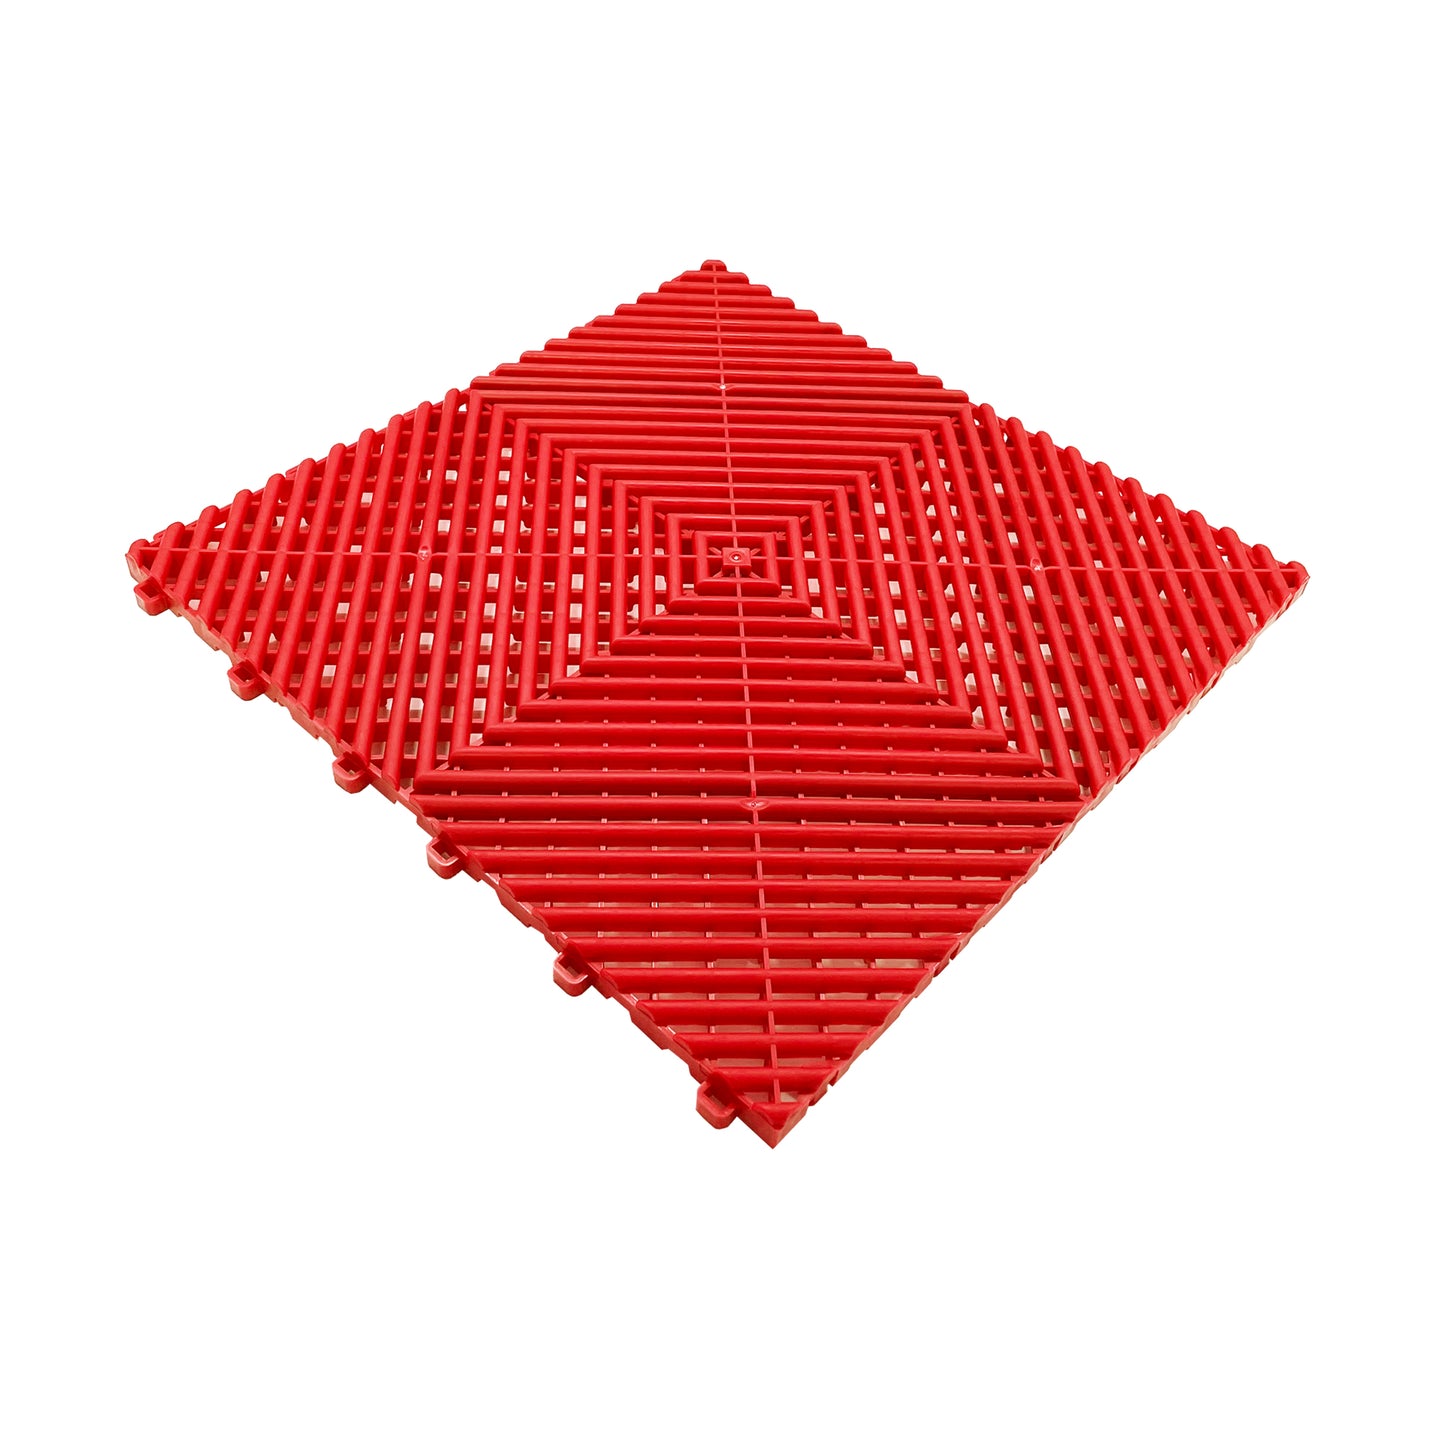 Modular Interlocking Ribbed Garage Flooring Tiles - Red